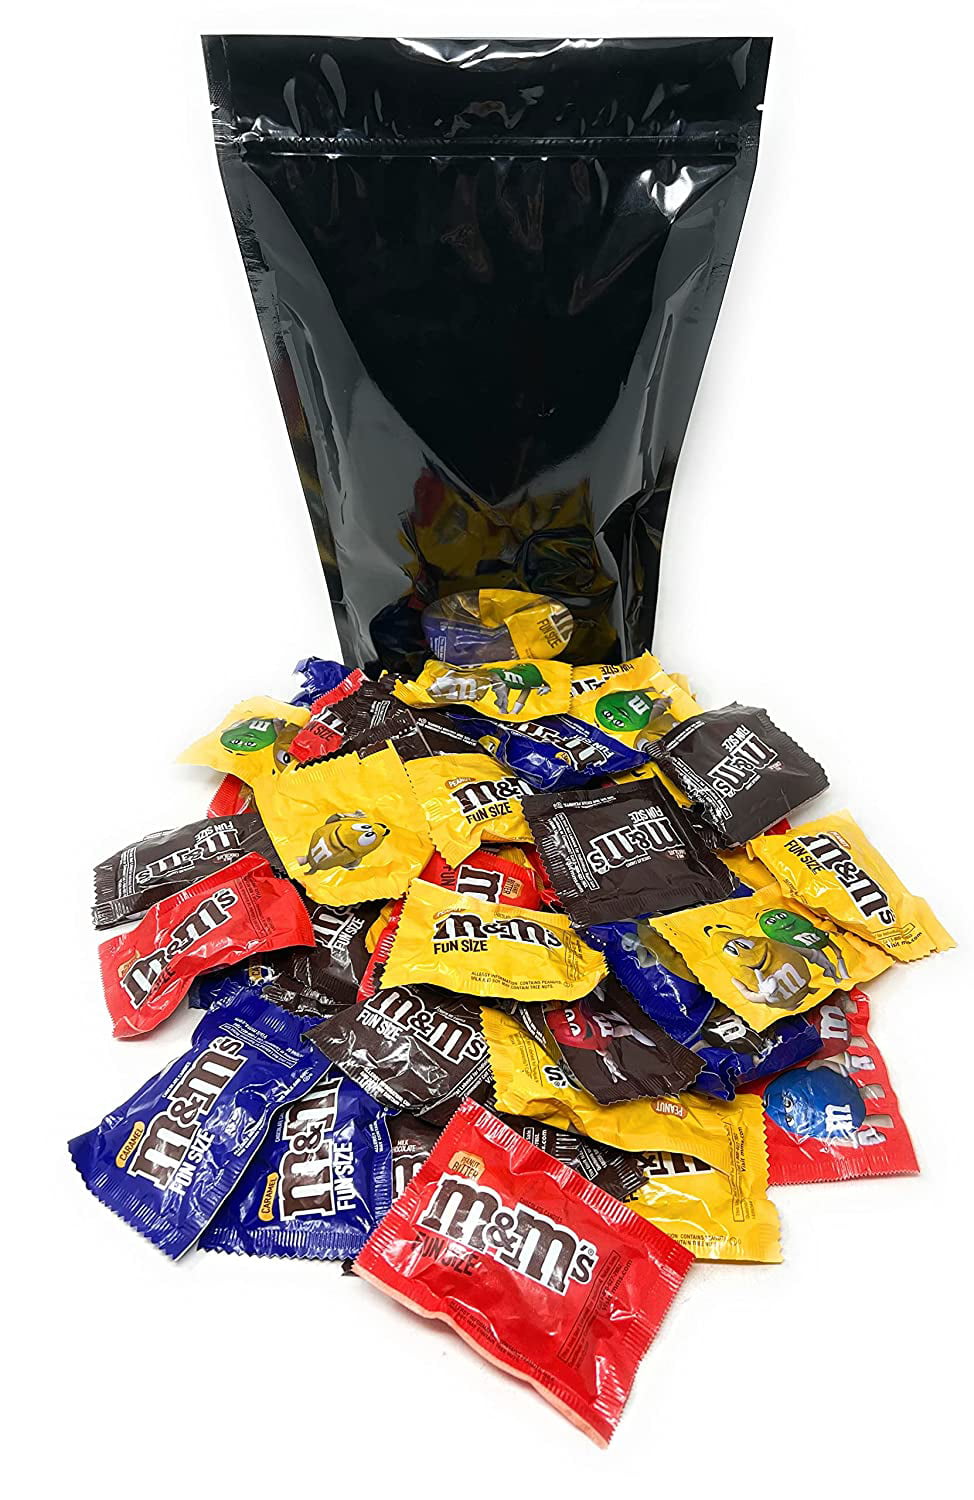 M&M Peanut (165 g) - Tasty America- American Candy, Snacks, Food & Soda  Online